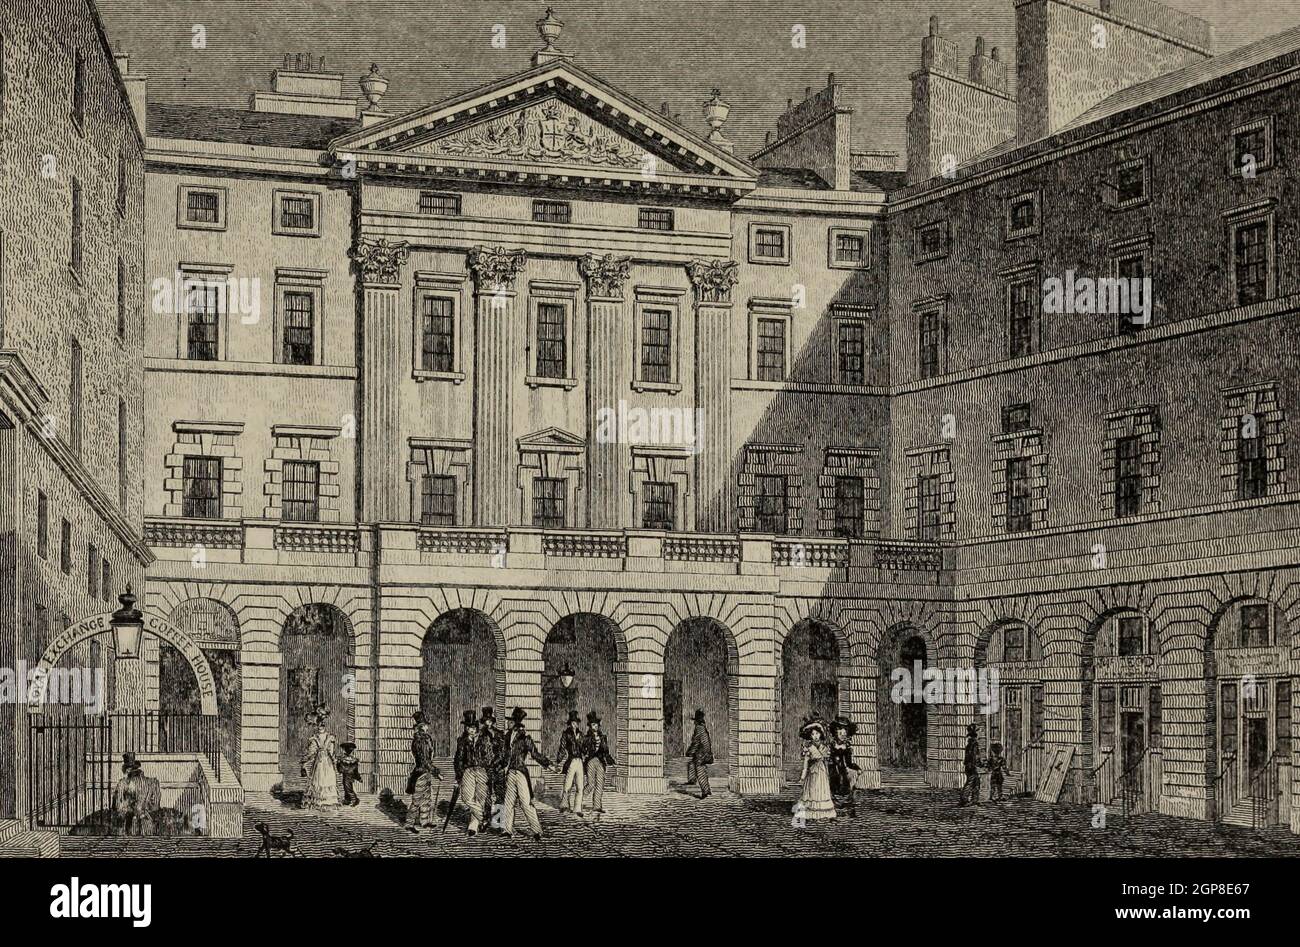 Royal Exchange, High Street, Édimbourg, Écosse, 1830 Banque D'Images